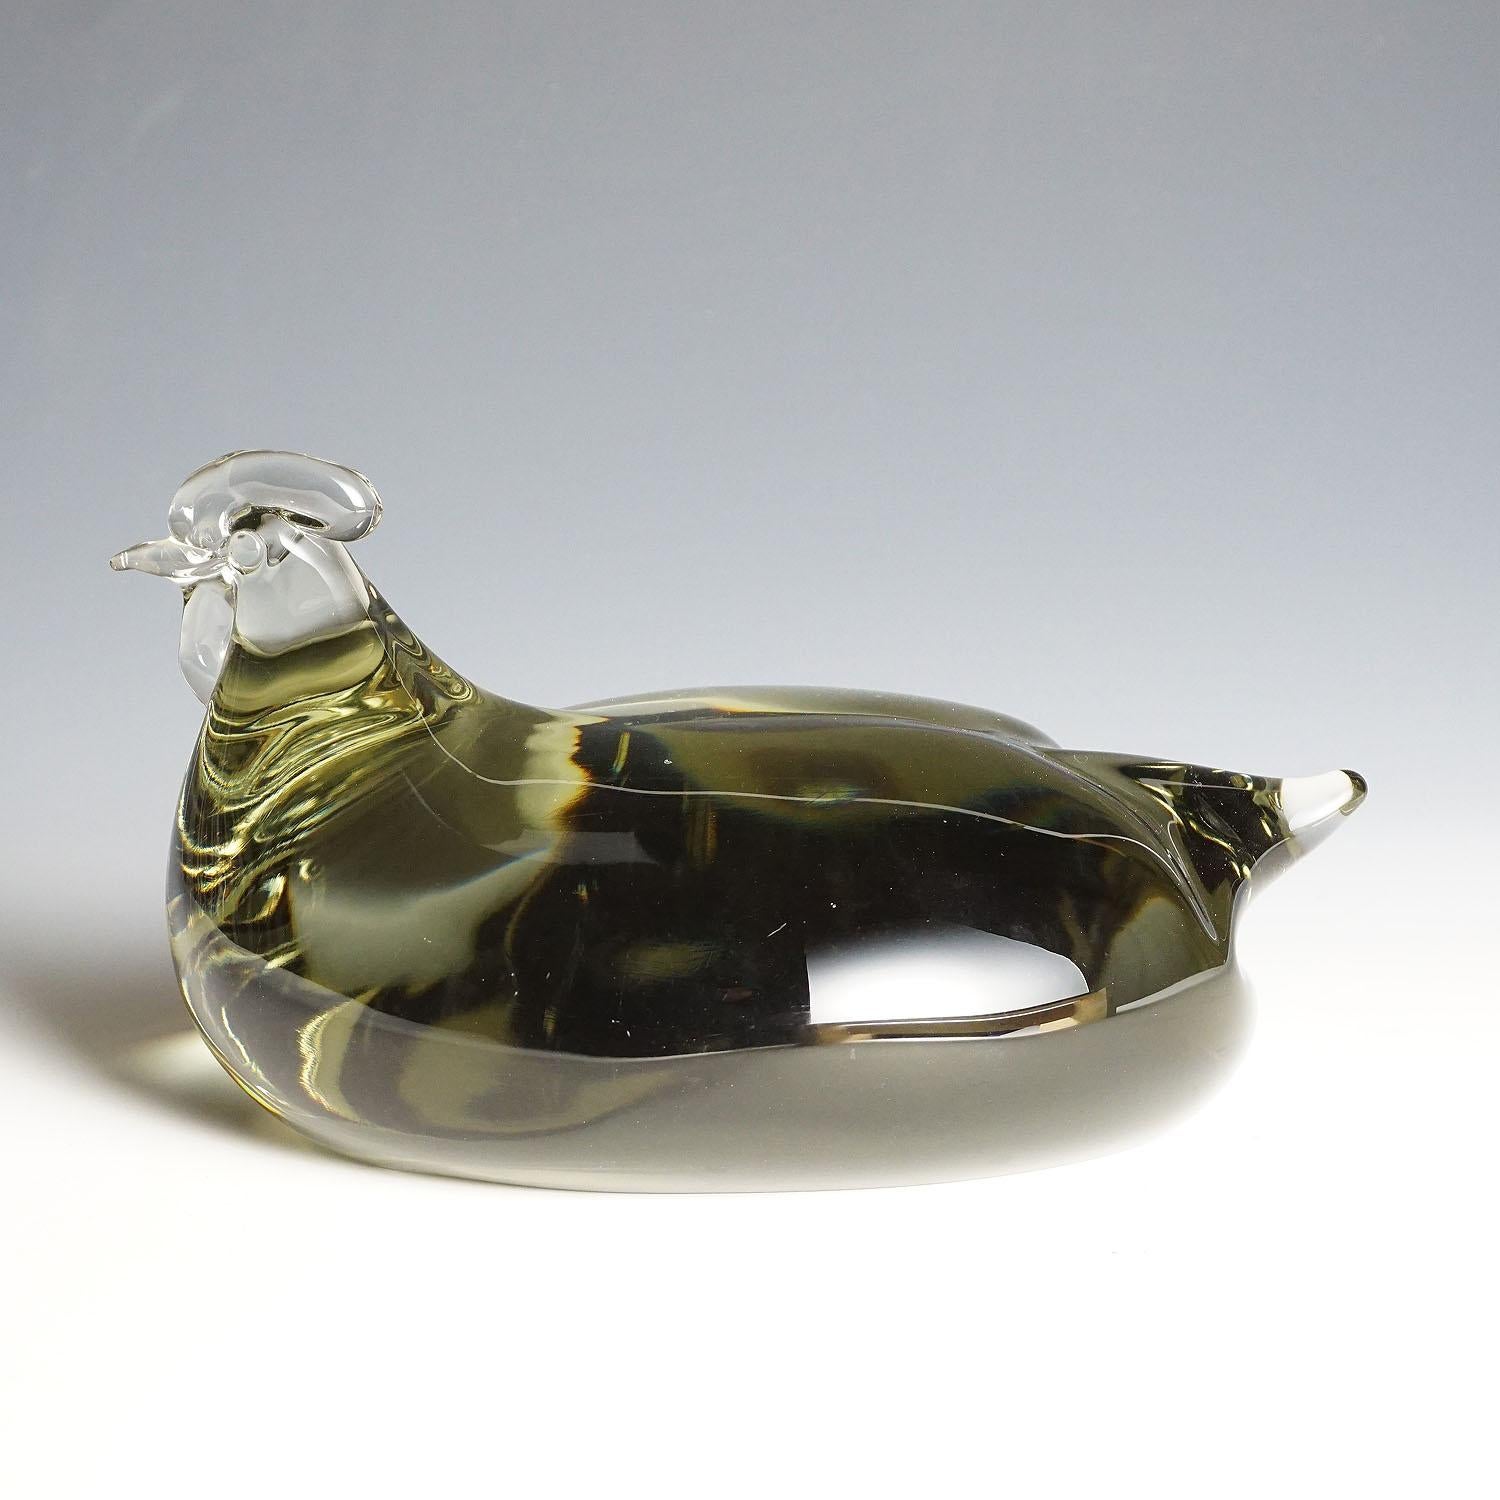 Grande sculpture d'un poulet stylisé en verre gris fumée. Fabriqué à la main dans la manufacture de verre Gral, en Allemagne. Conçu par Livio Seguso, vers 1970. Signature incisée de l'artiste (LS) sur la base.

Livio Seguso (* 1930) est issu d'une